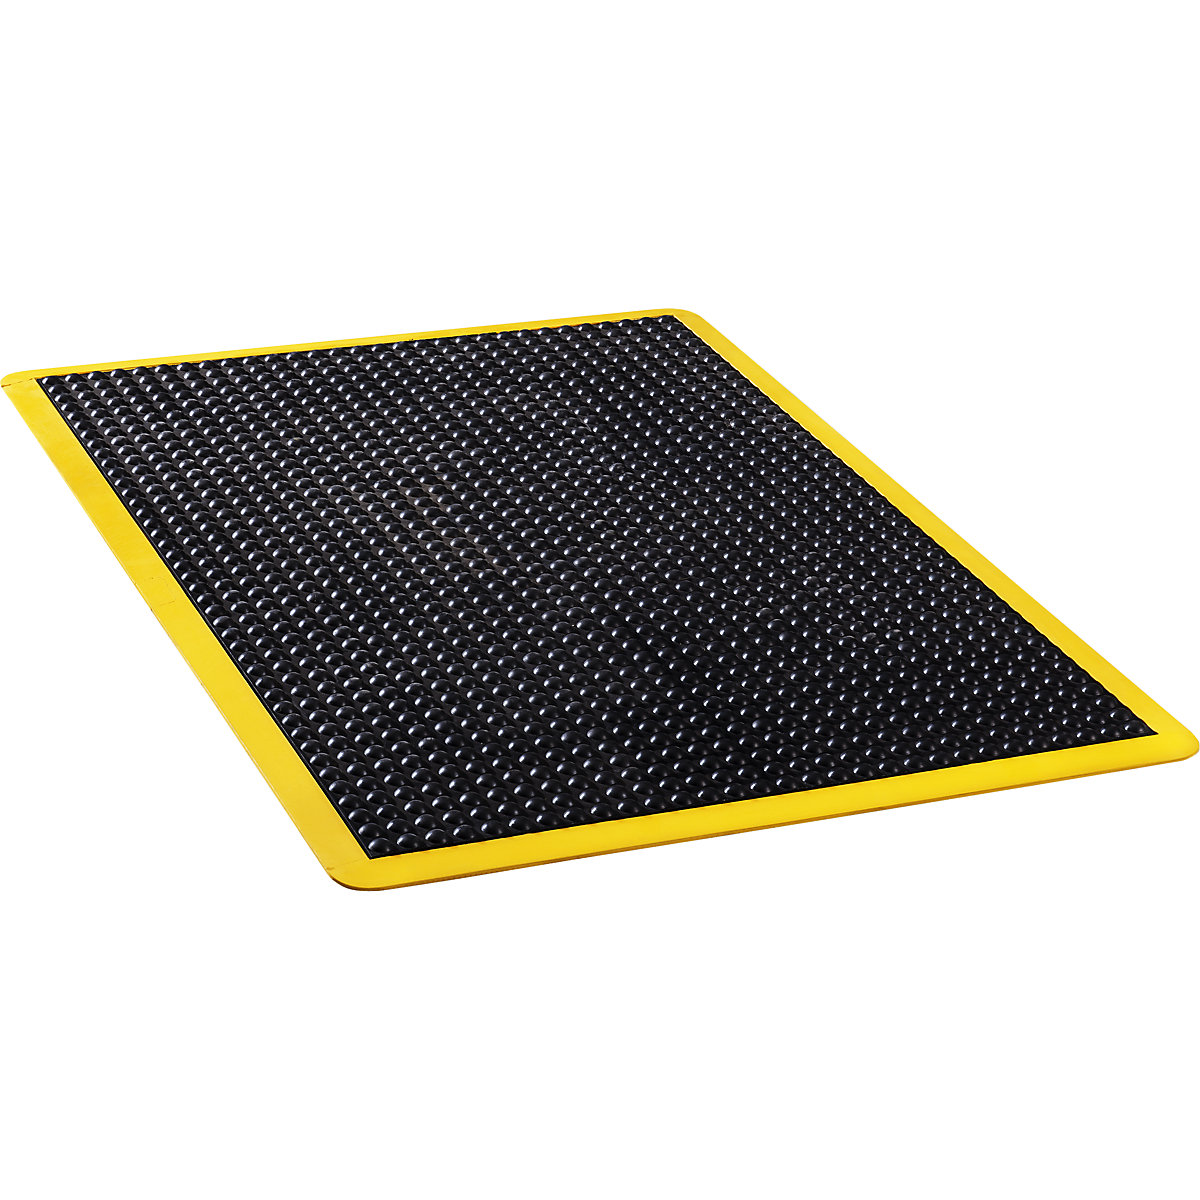 Anti-vermoeidheidsmat Bubblemat safety – COBA, l x b x h = 900 x 600 x 14 mm, zwart/geel, individuele mat-3